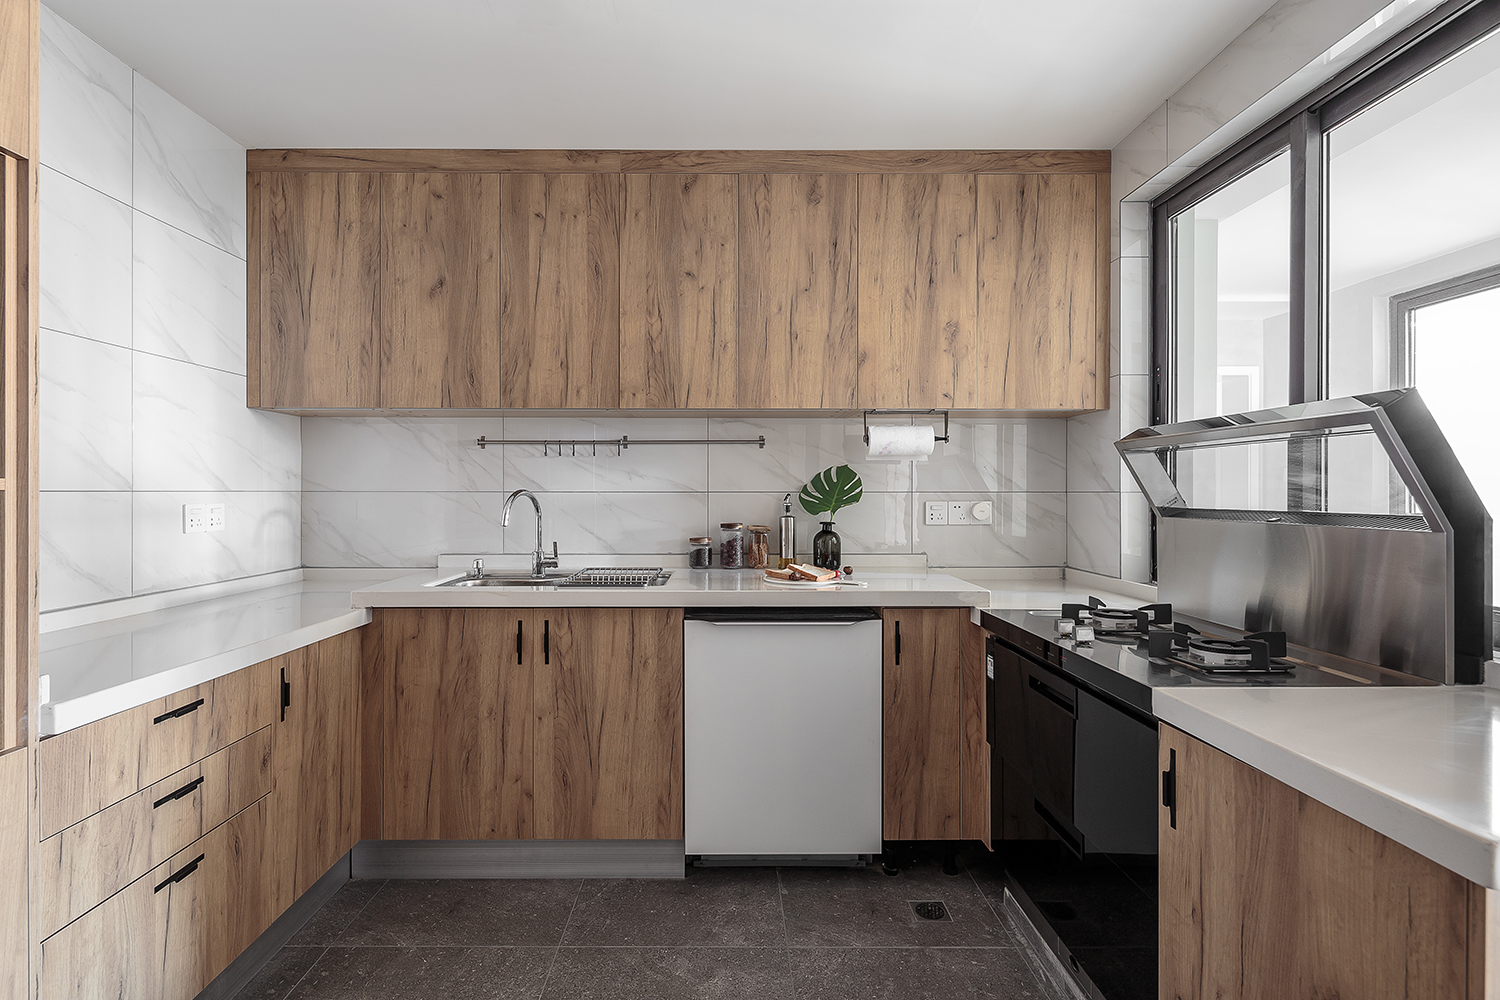 厨房吊顶效果图生态木图片